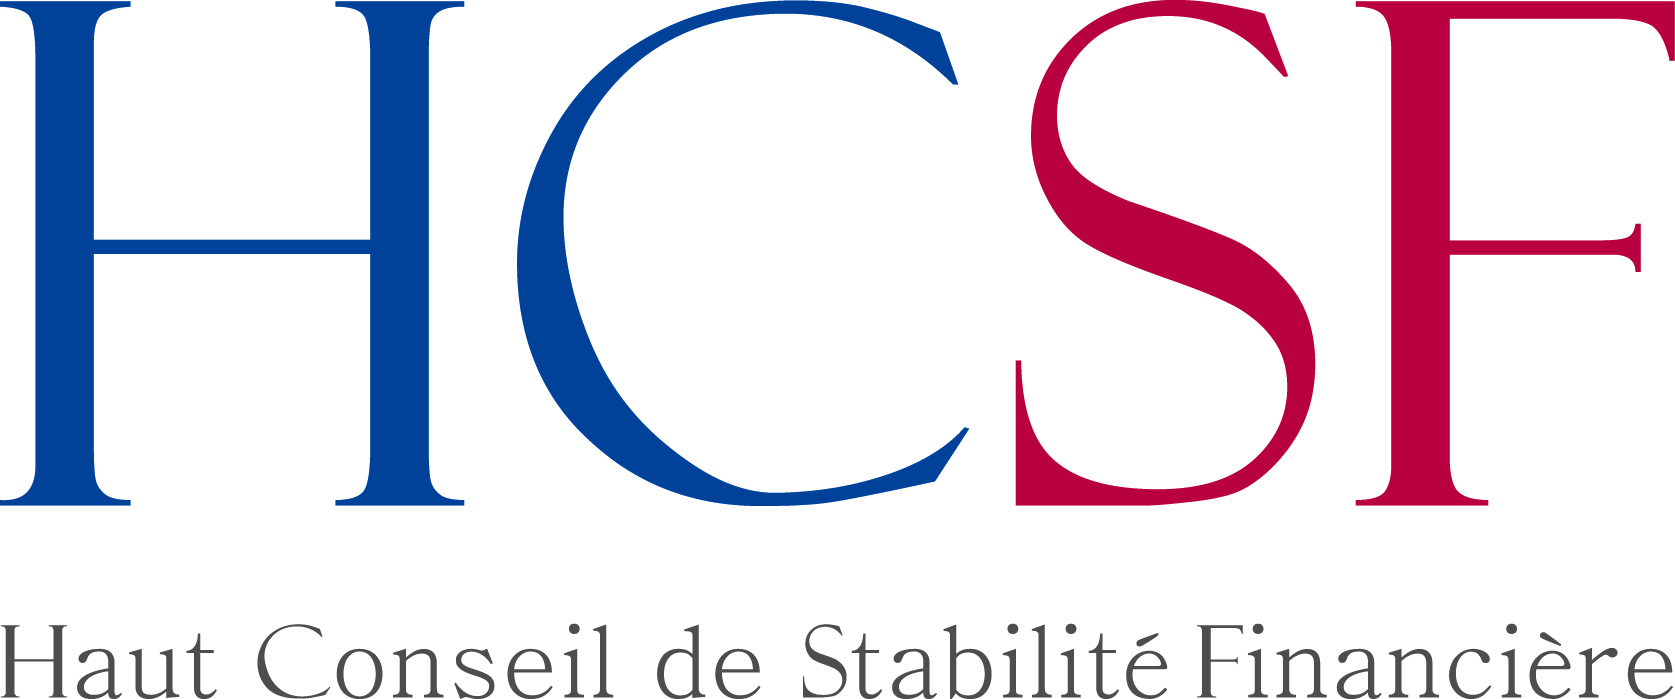 HSCF logo